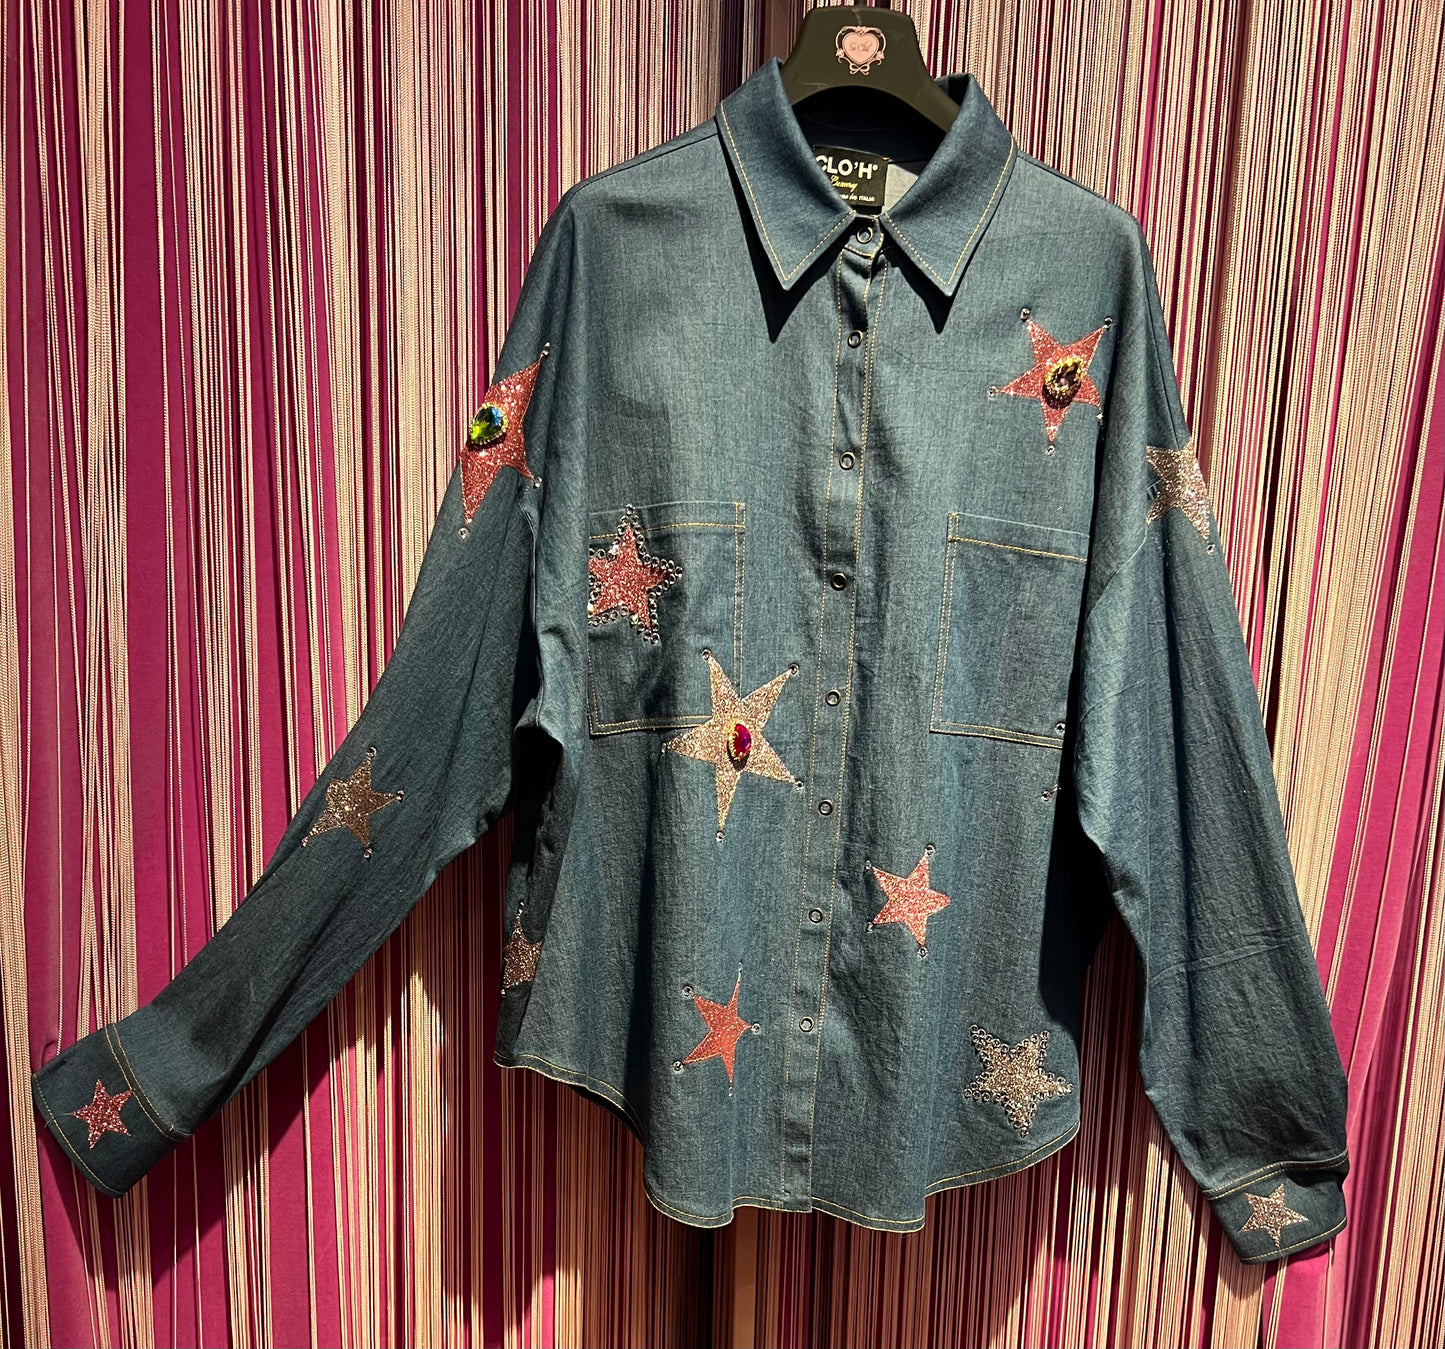 Clo’h camicia jeans con applicazioni stelle strass e Swarovski